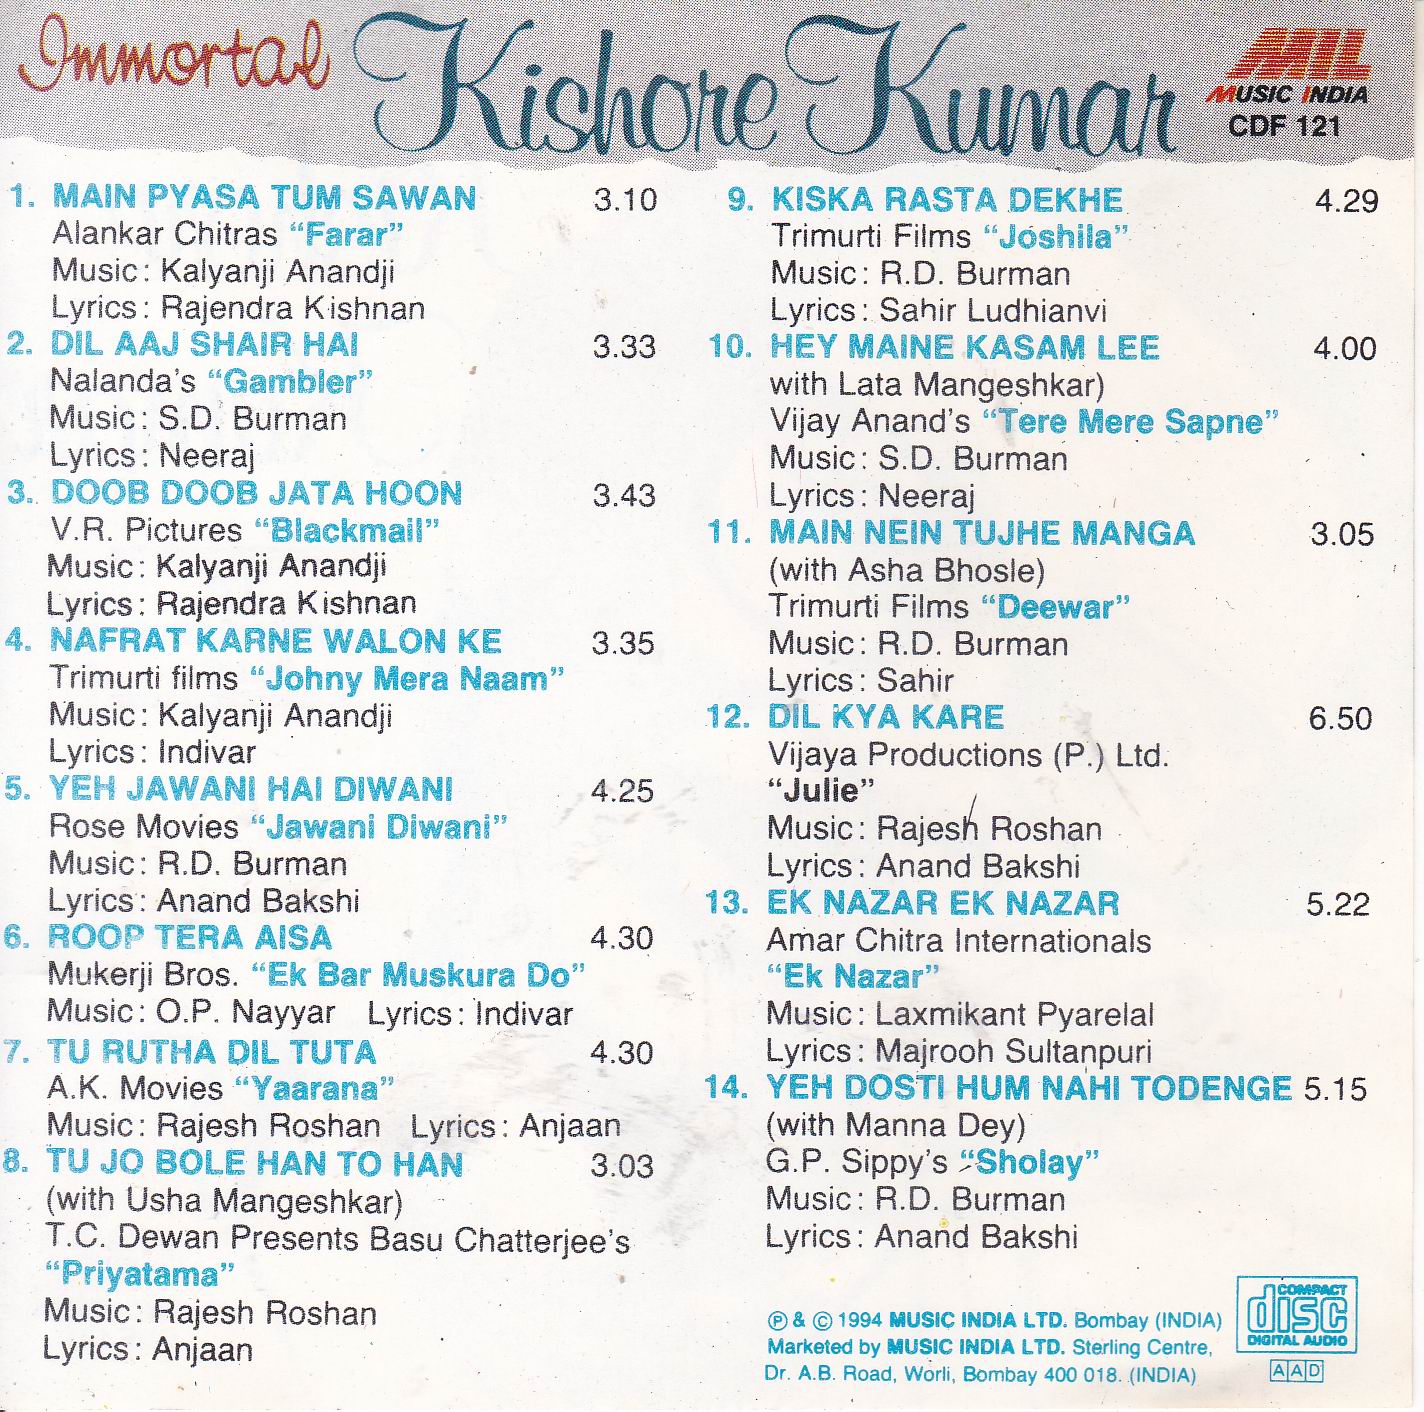 Immortal Kishore Kumar Music India Cd - Click Image to Close